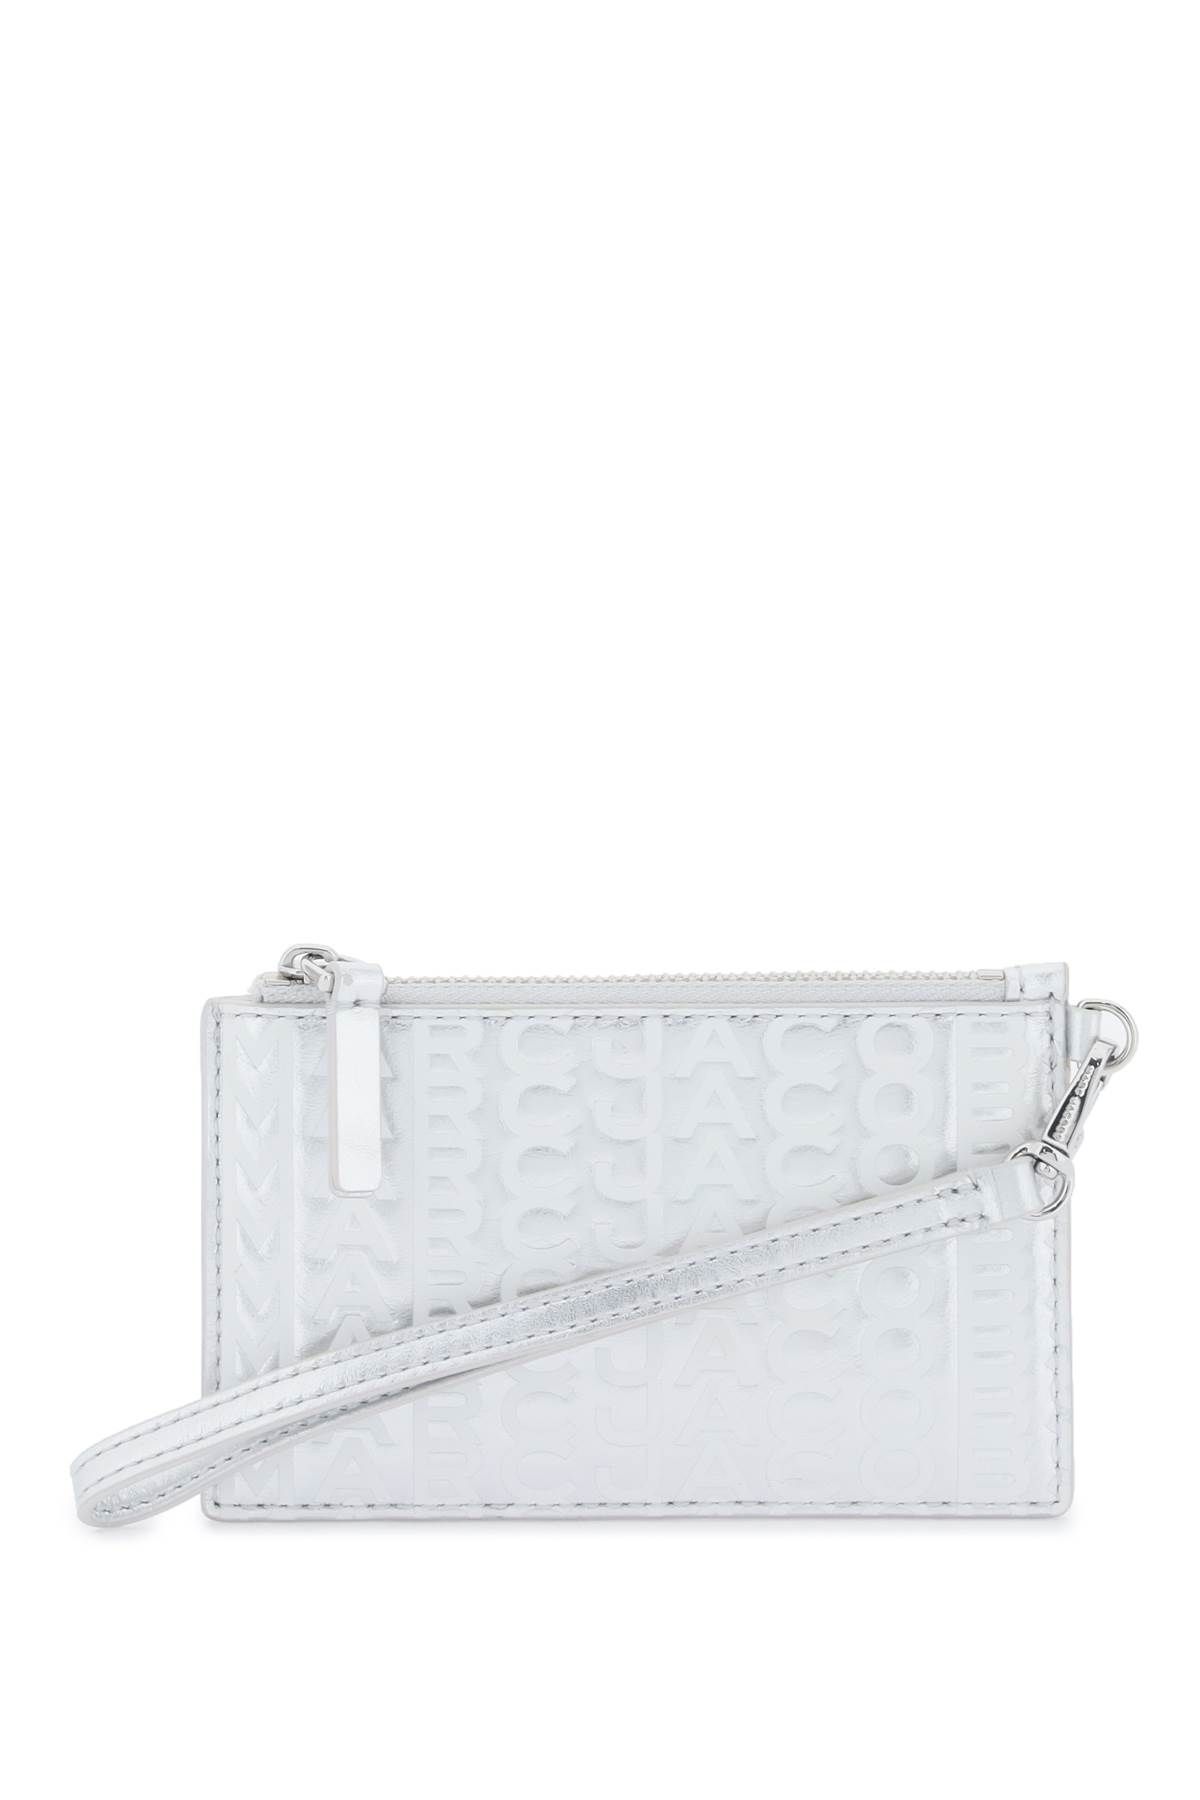 Shop Marc Jacobs The Metallic Top Zip Wristlet Wallet In Silver